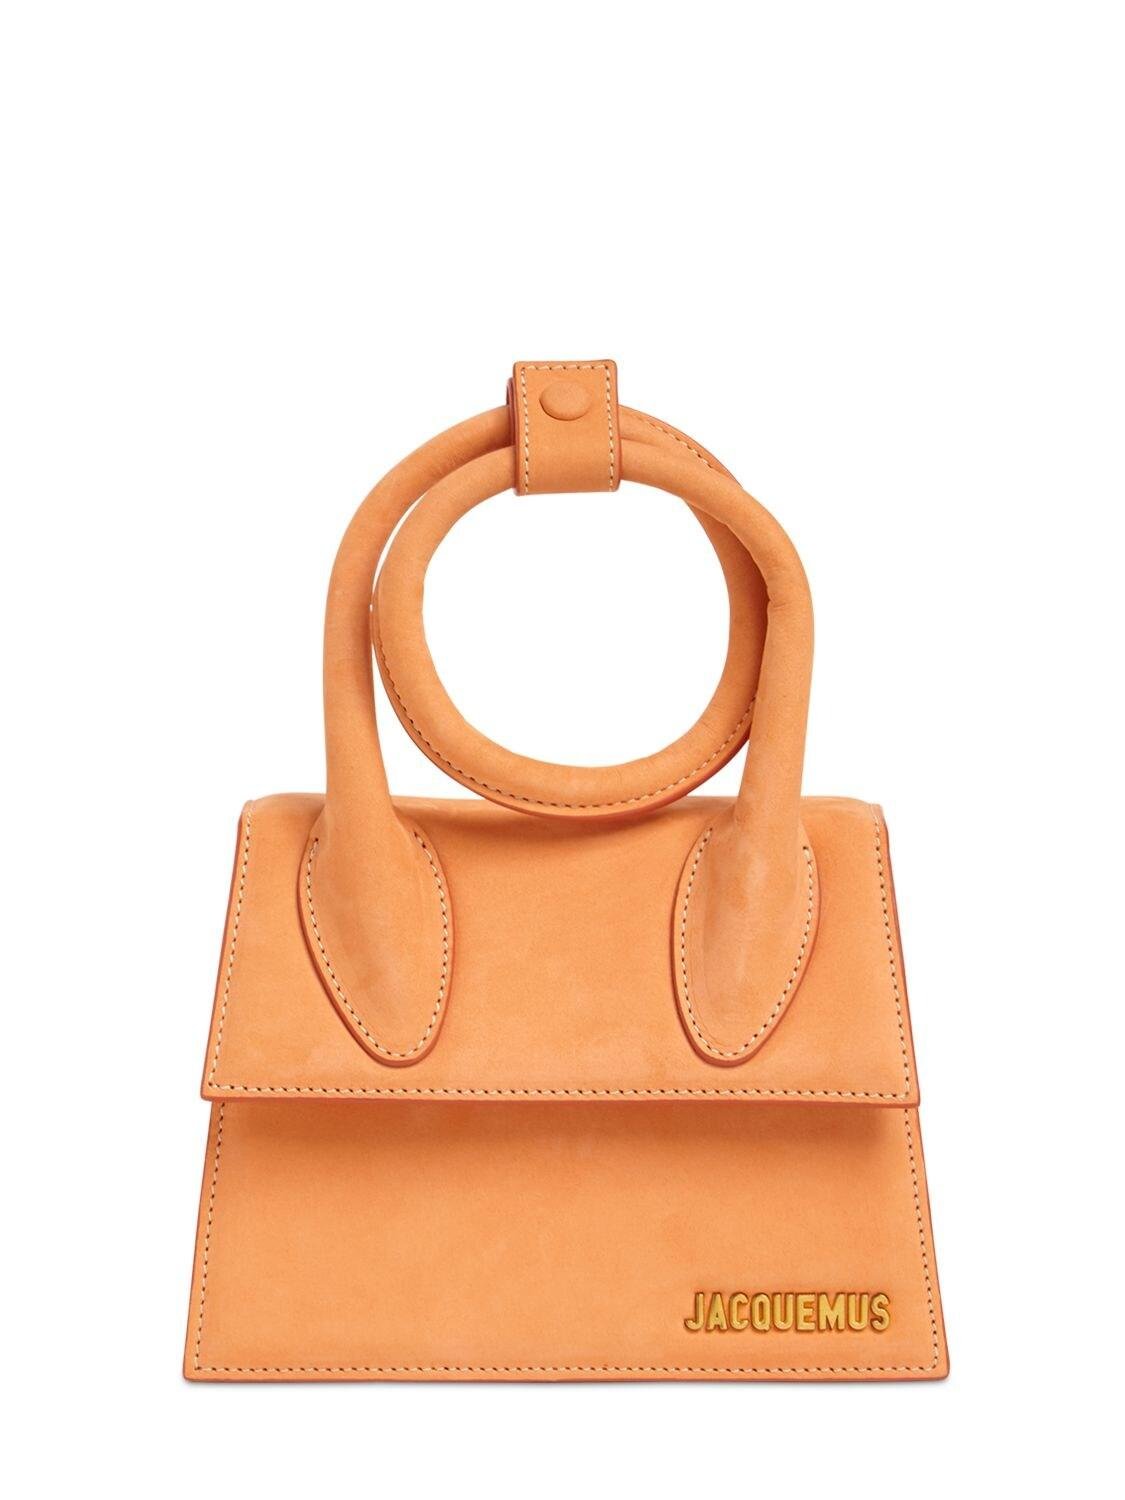 Jacquemus: Orange 'Le Chiquito Noeud' Bag